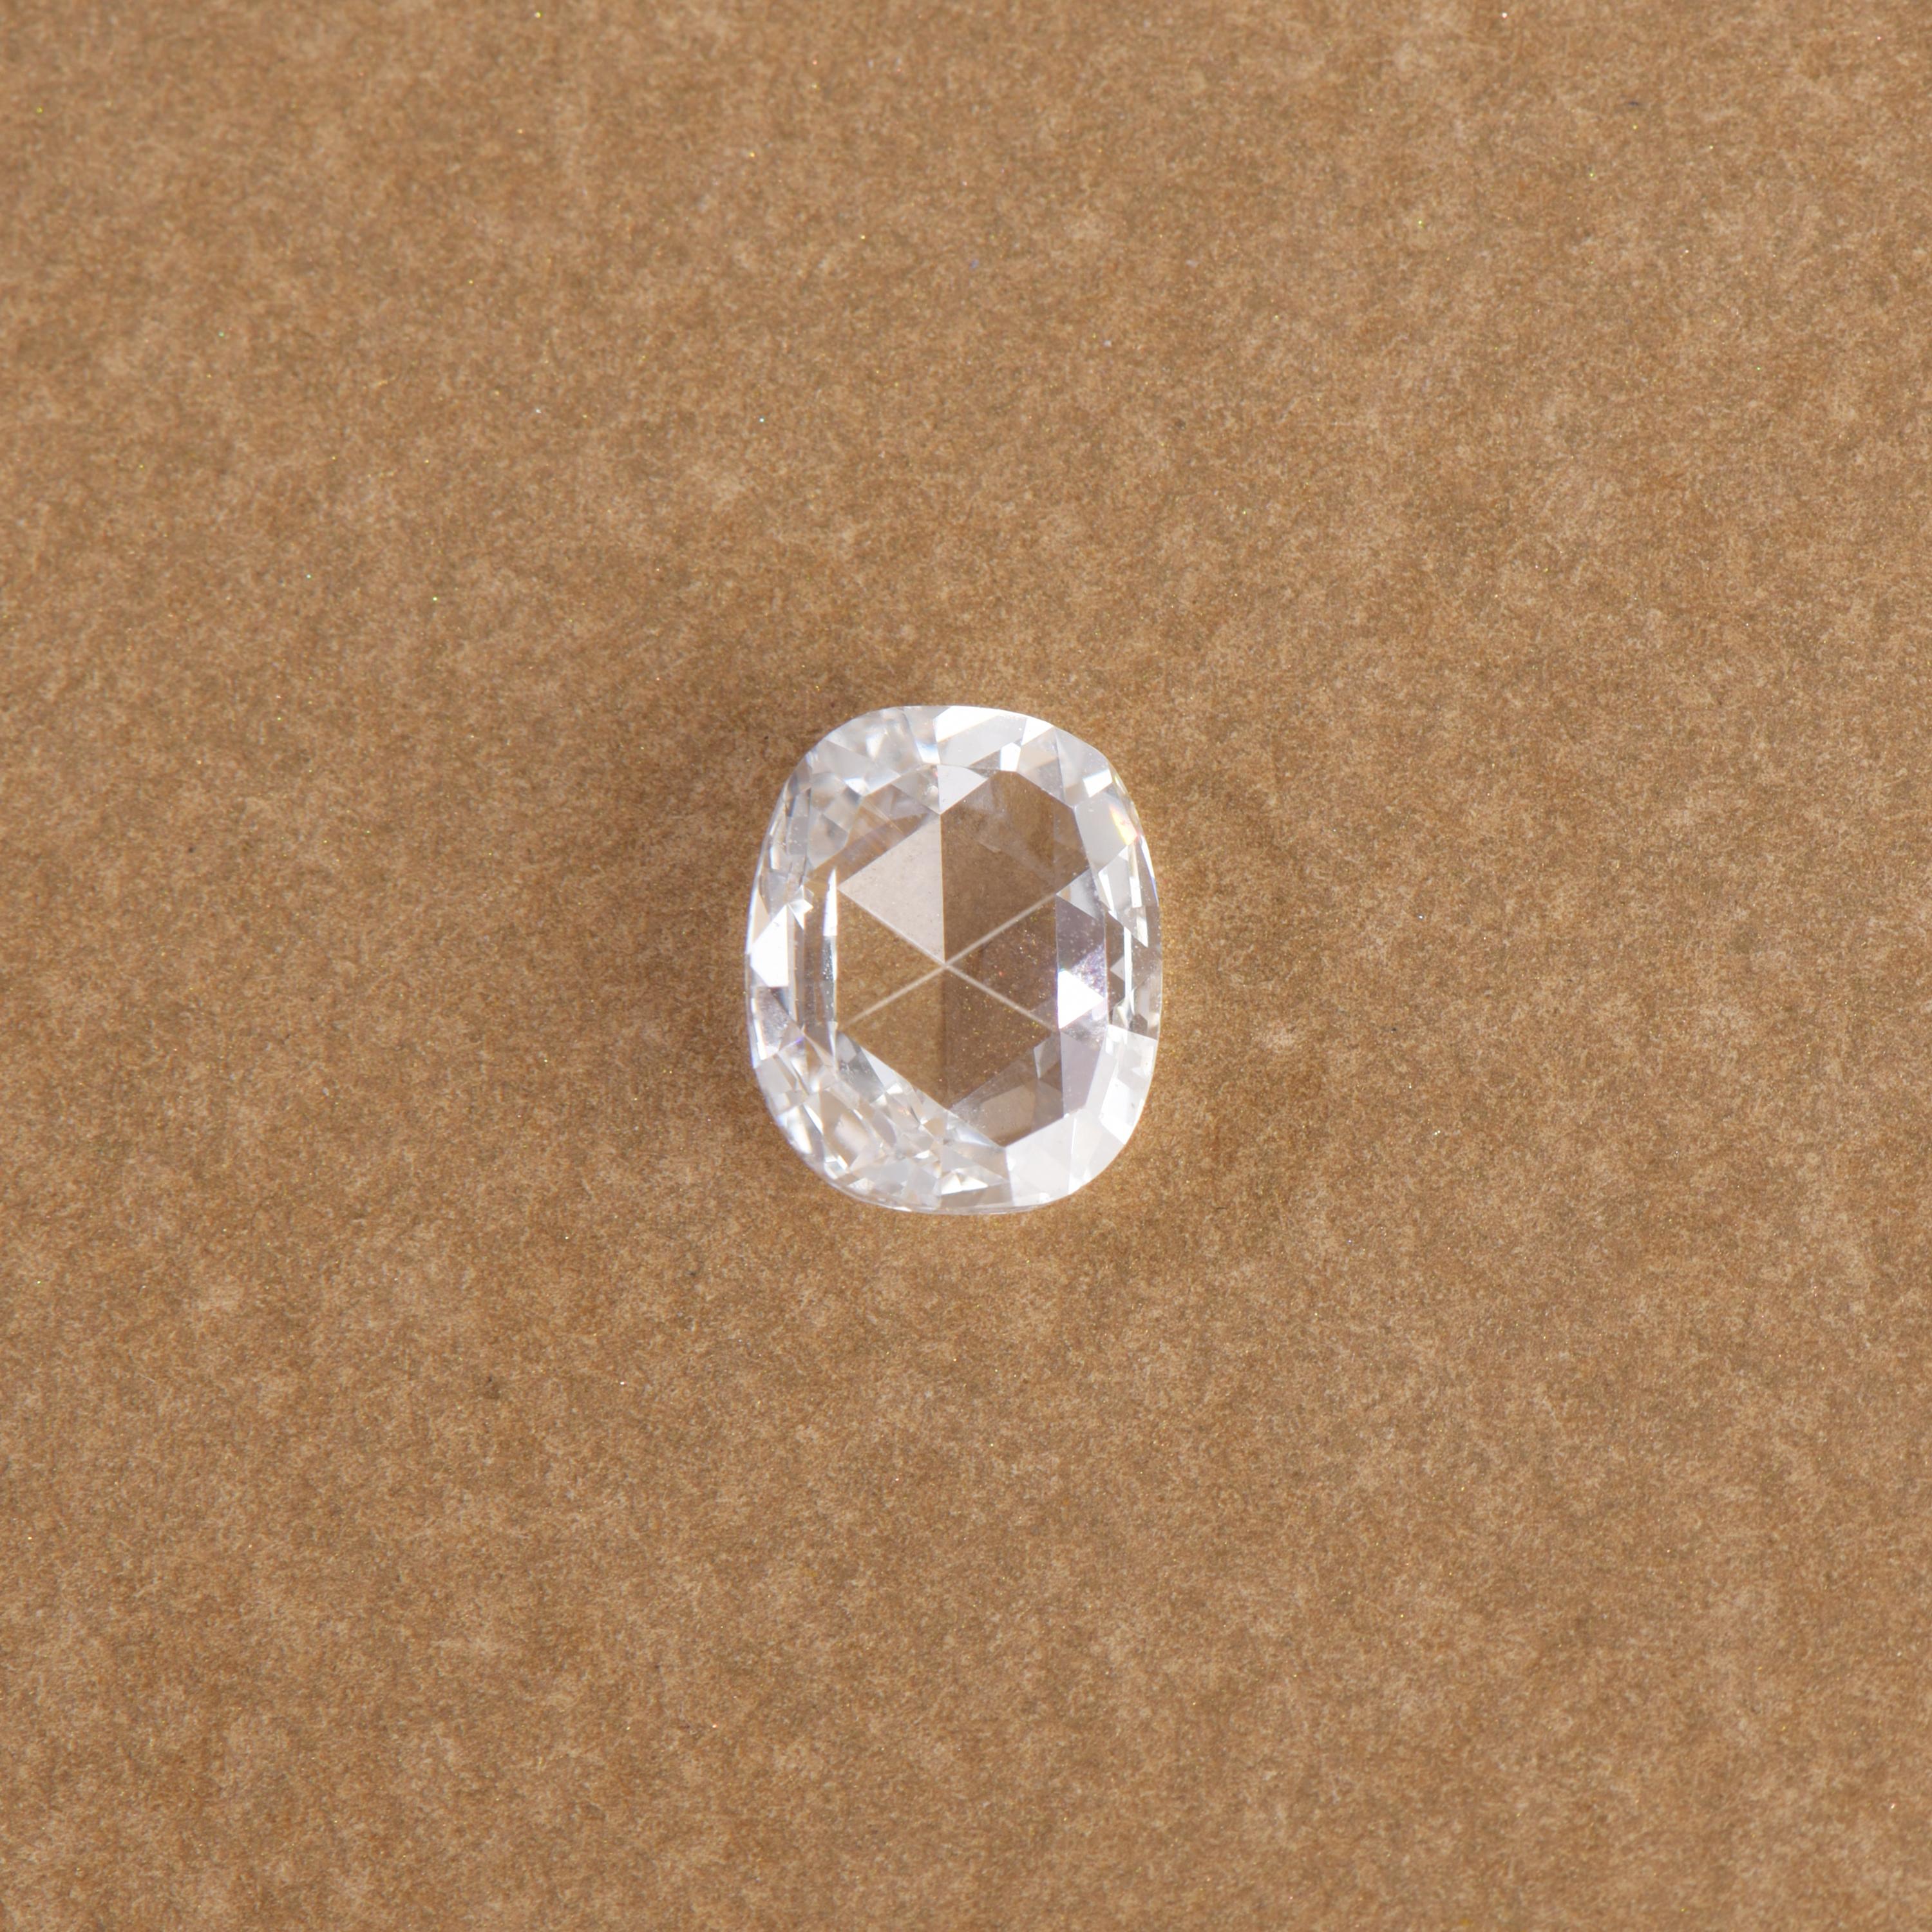 0.81 Karat loser Diamant, Farbe F, Reinheit VS, dieser schöne Diamant weist Transparenz und Symmetrie auf. Mit einer Größe von 6,9 x 5,7 mm kann dieser Diamant in einen Verlobungsring oder ein anderes Design Ihrer Wahl eingesetzt werden.

Wir